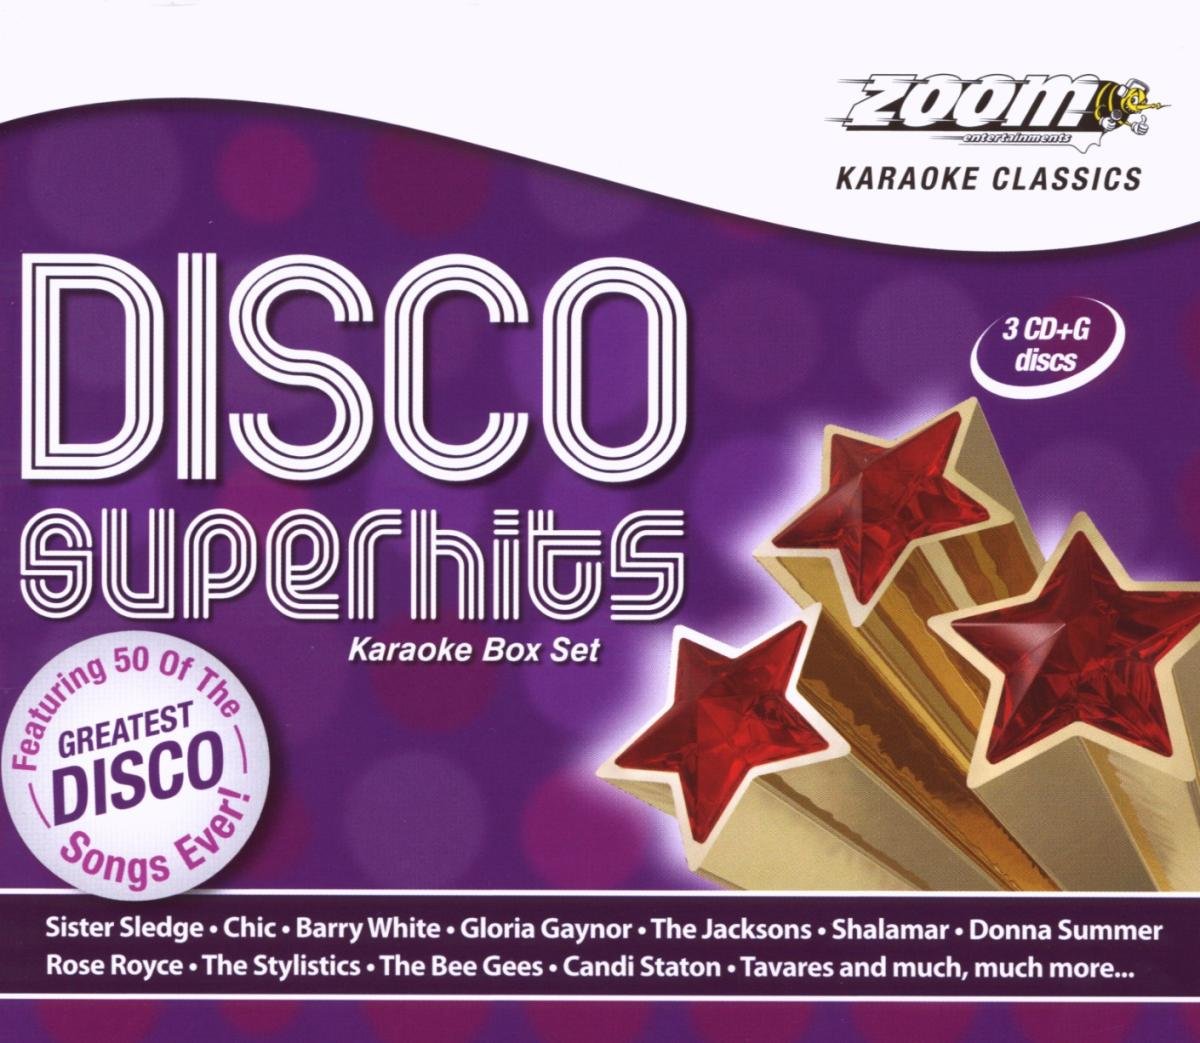 CD Shop - ZOOM KARAOKE KARAOKE CLASSICS: DISCO SUPERHITS BOX SET